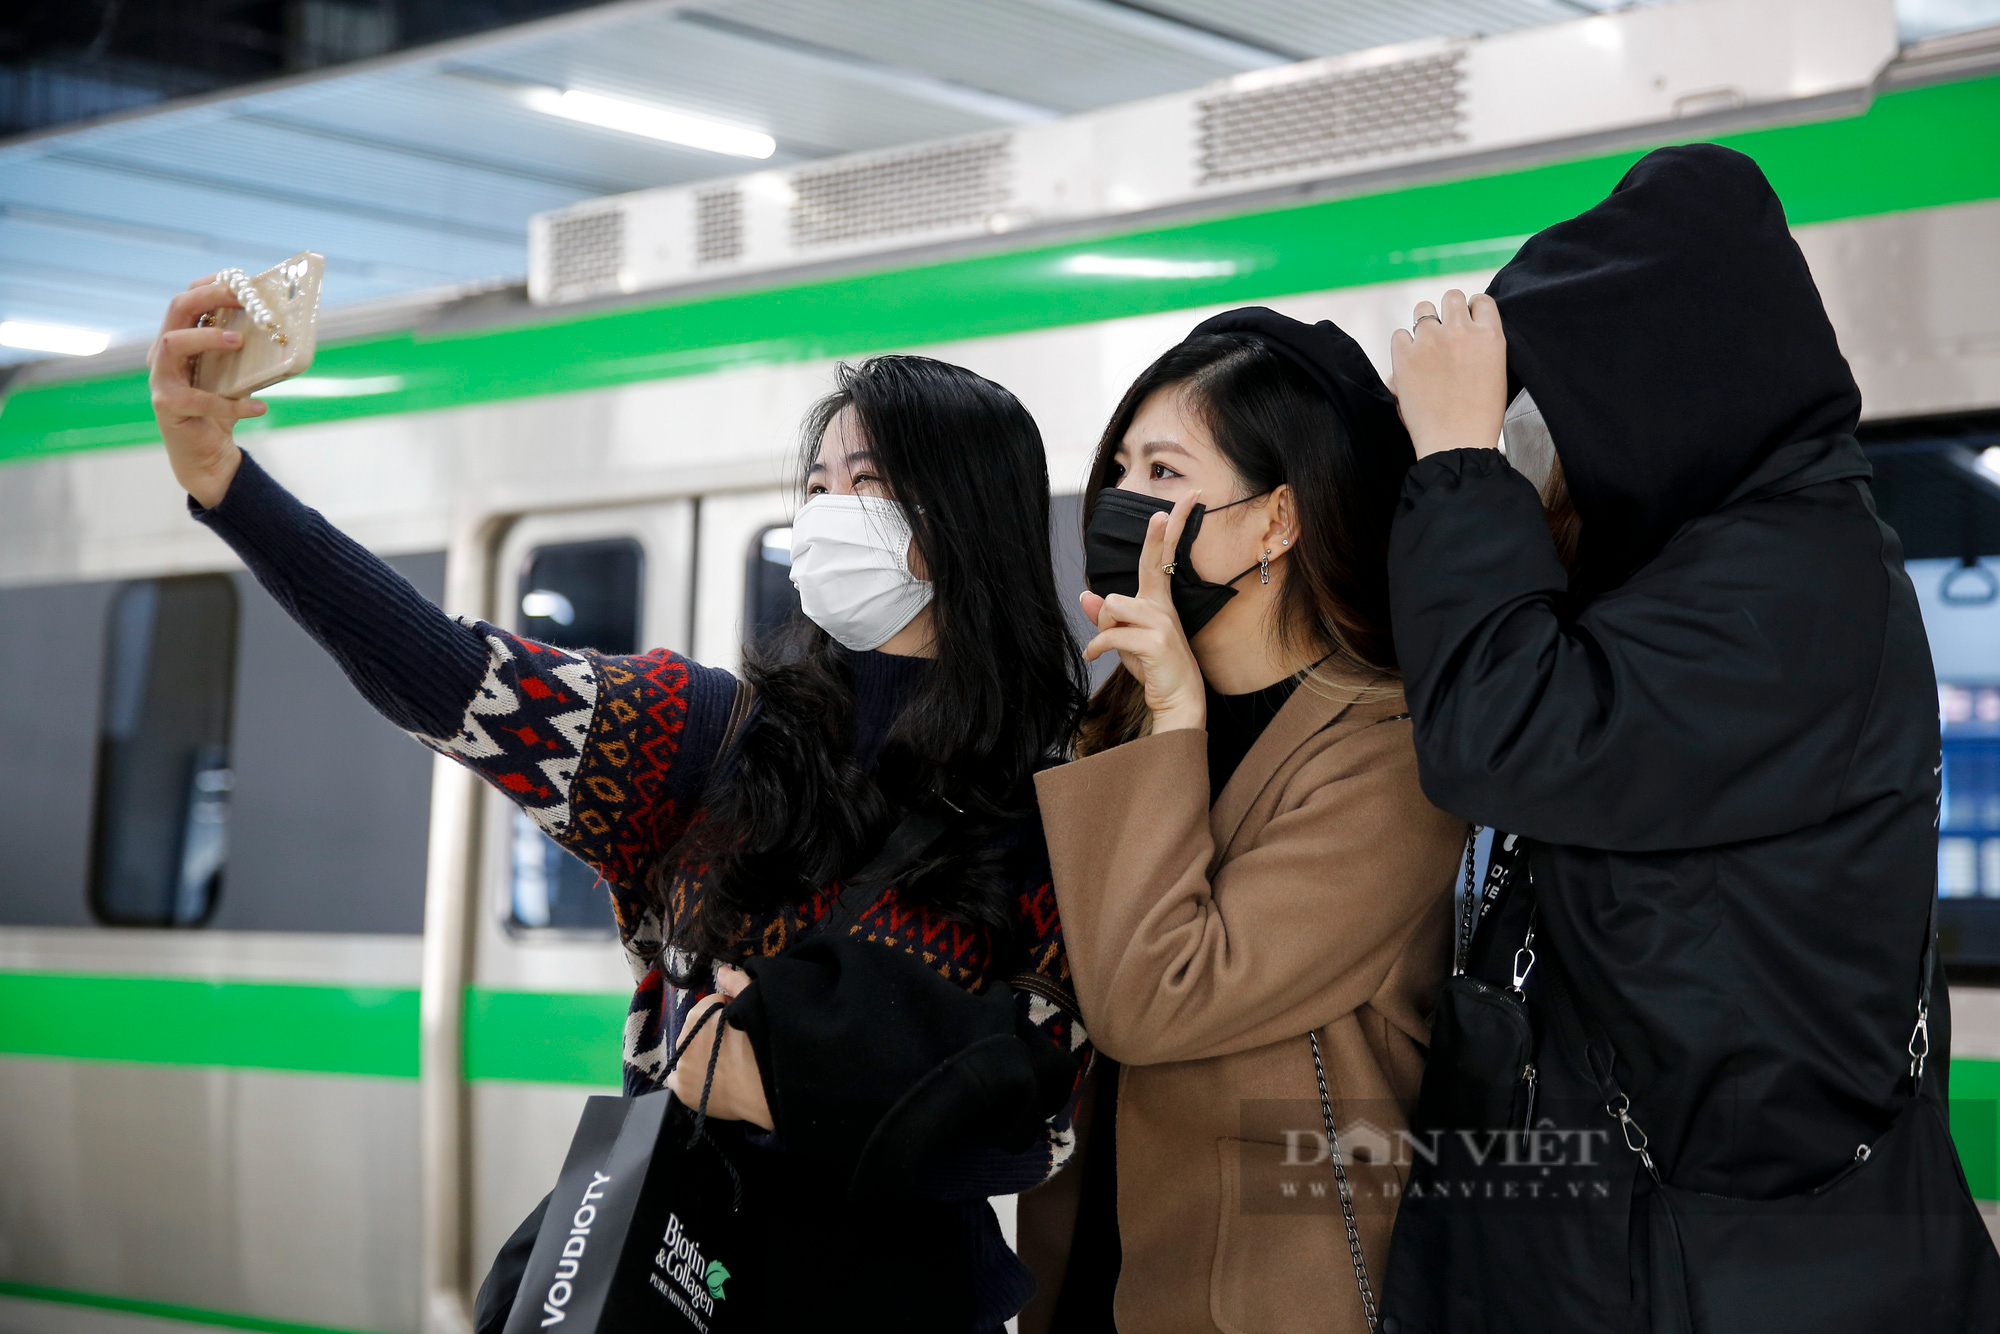 Ga tàu Cát Linh - Hà Đông bất ngờ vắng vẻ, giới trẻ Hà Nội rủ nhau đến chụp ảnh check-in  - Ảnh 3.